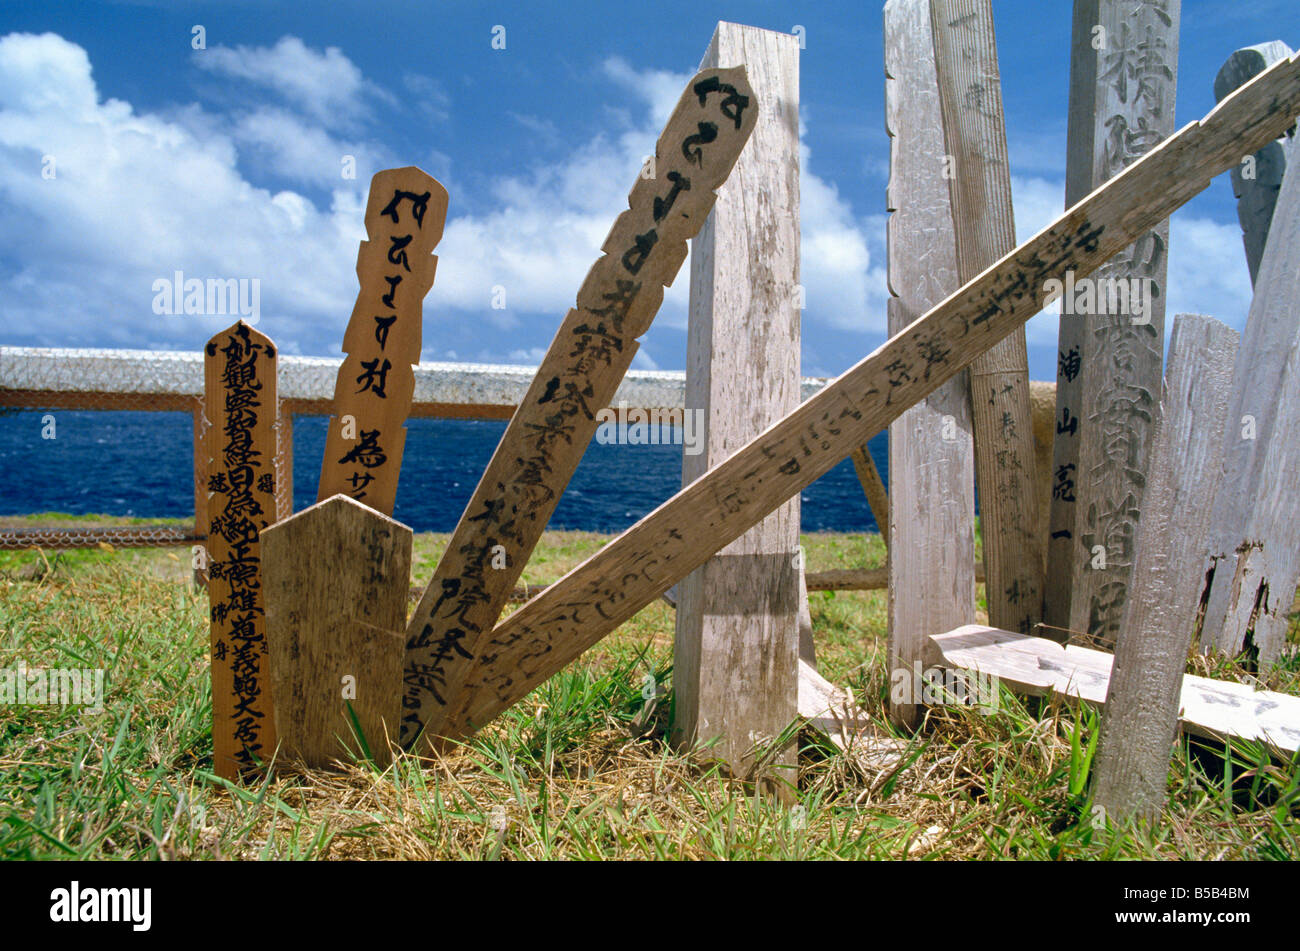 Les monuments commémoratifs de guerre japonais en bois morts de la DEUXIÈME GUERRE MONDIALE sur l'île de Saipan Iles du Pacifique Banque D'Images